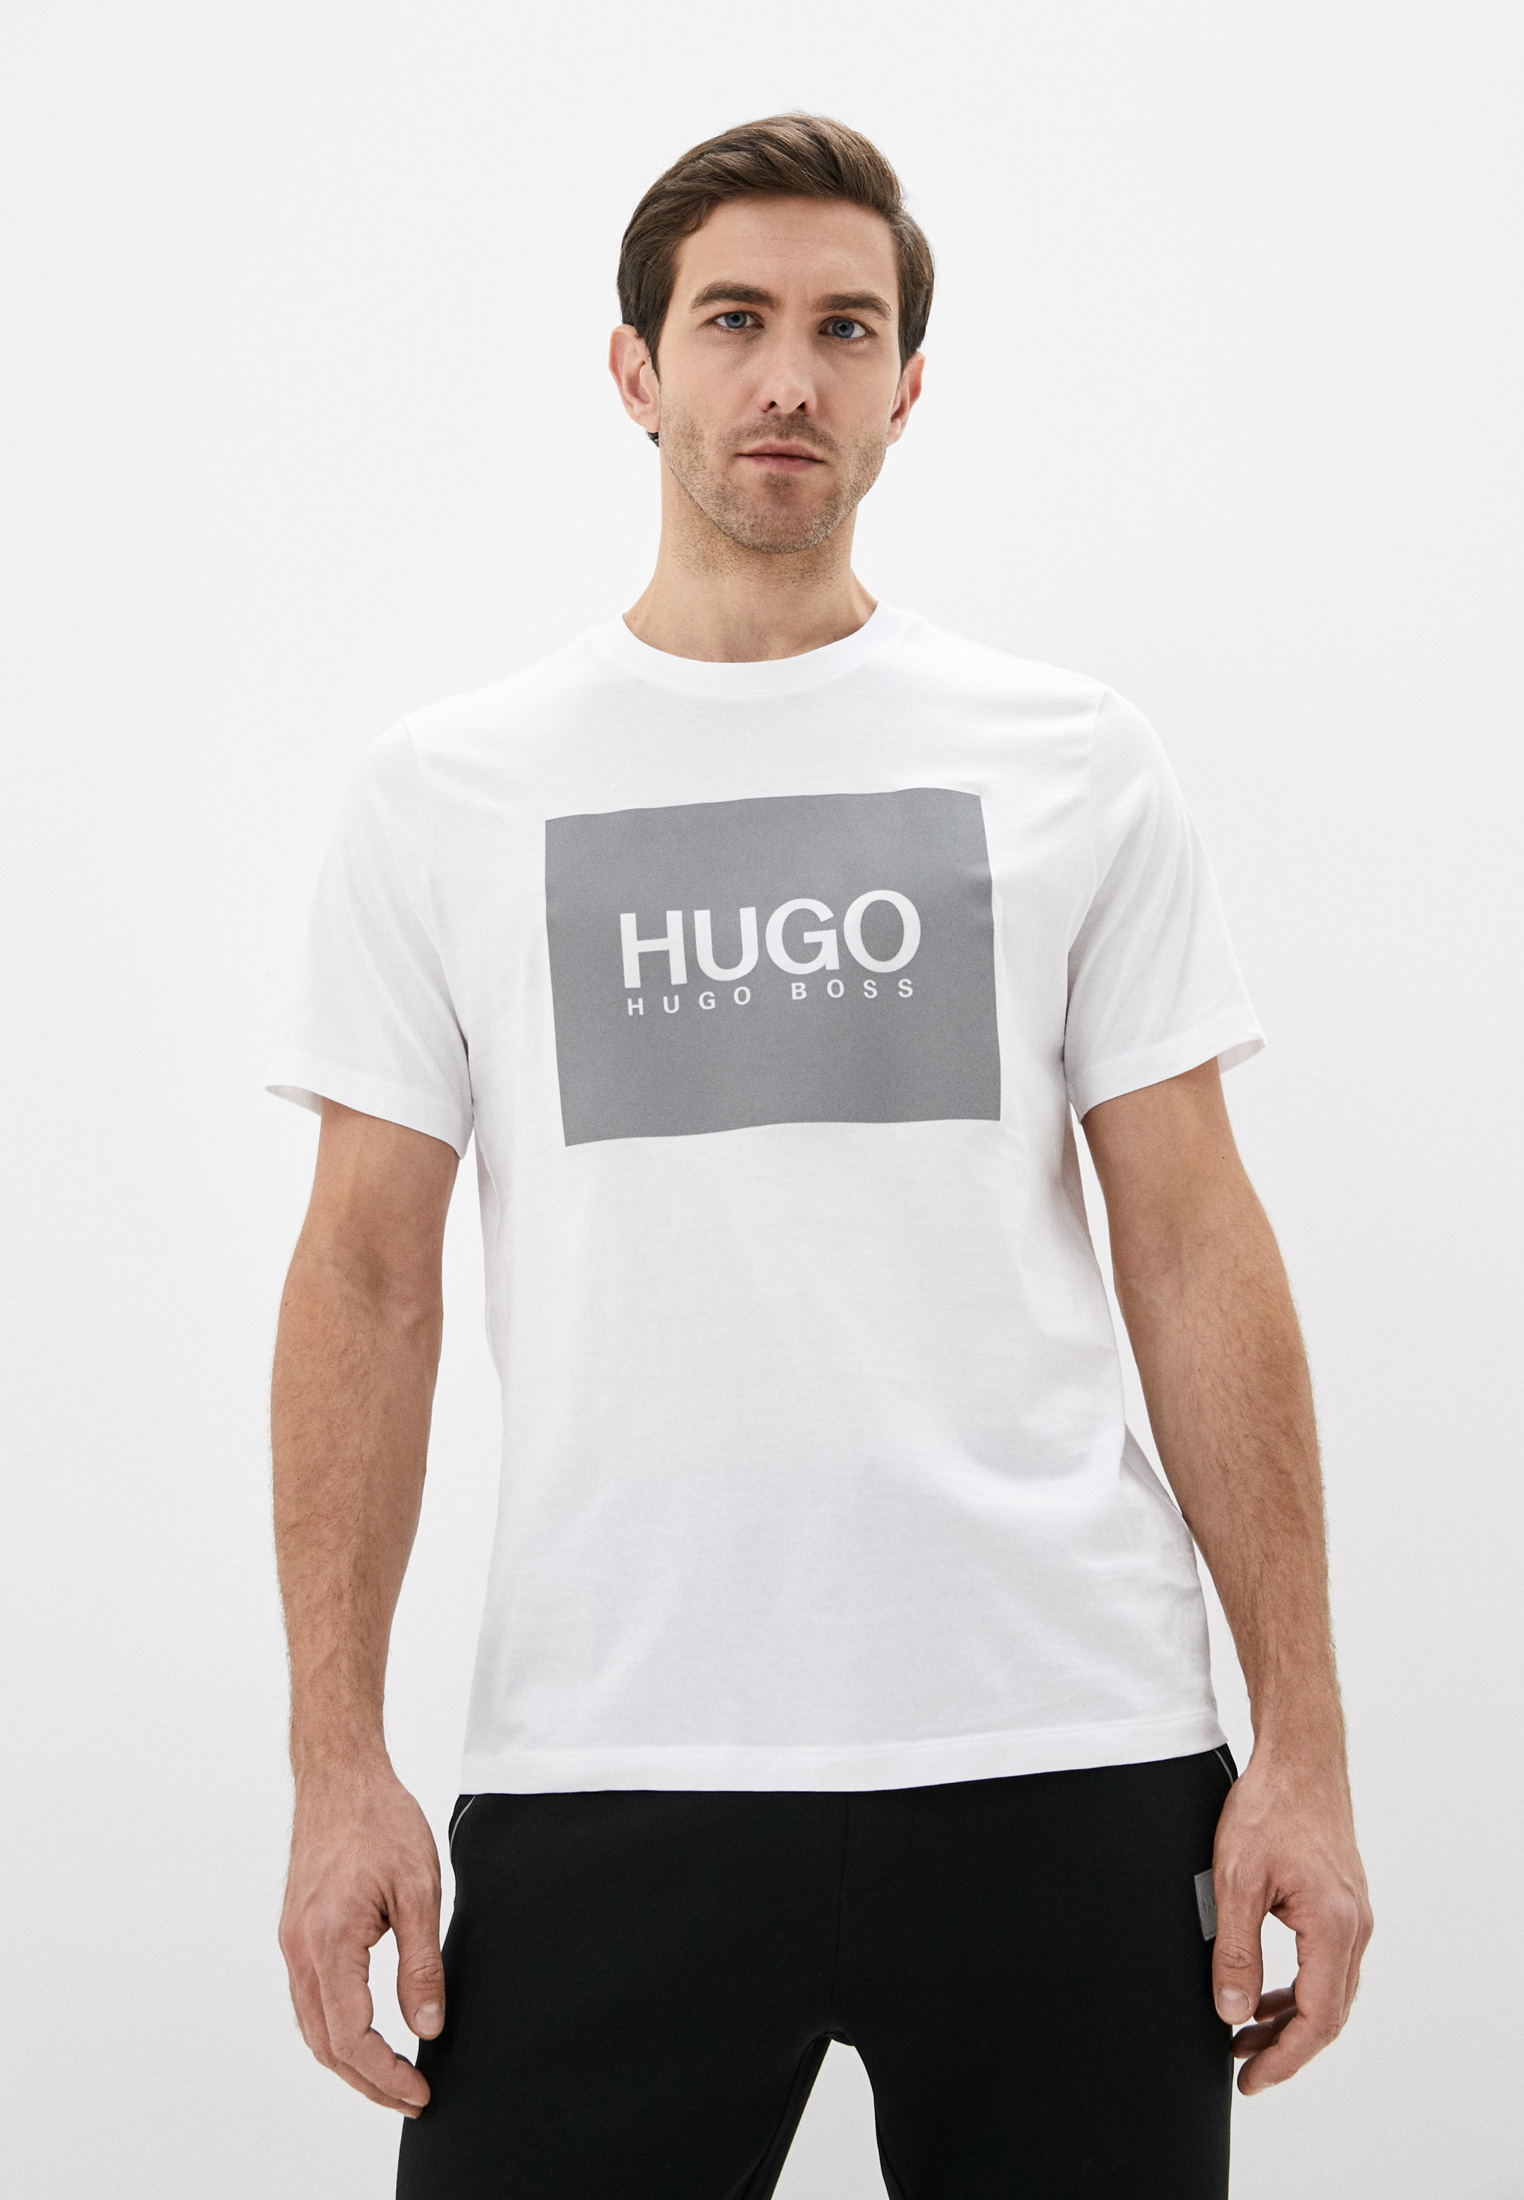 Купить футболку hugo. Белая футболка Хуго. Футболка Хьюго. Hugo футболка мужская. Футболка белая Hugo мужская.